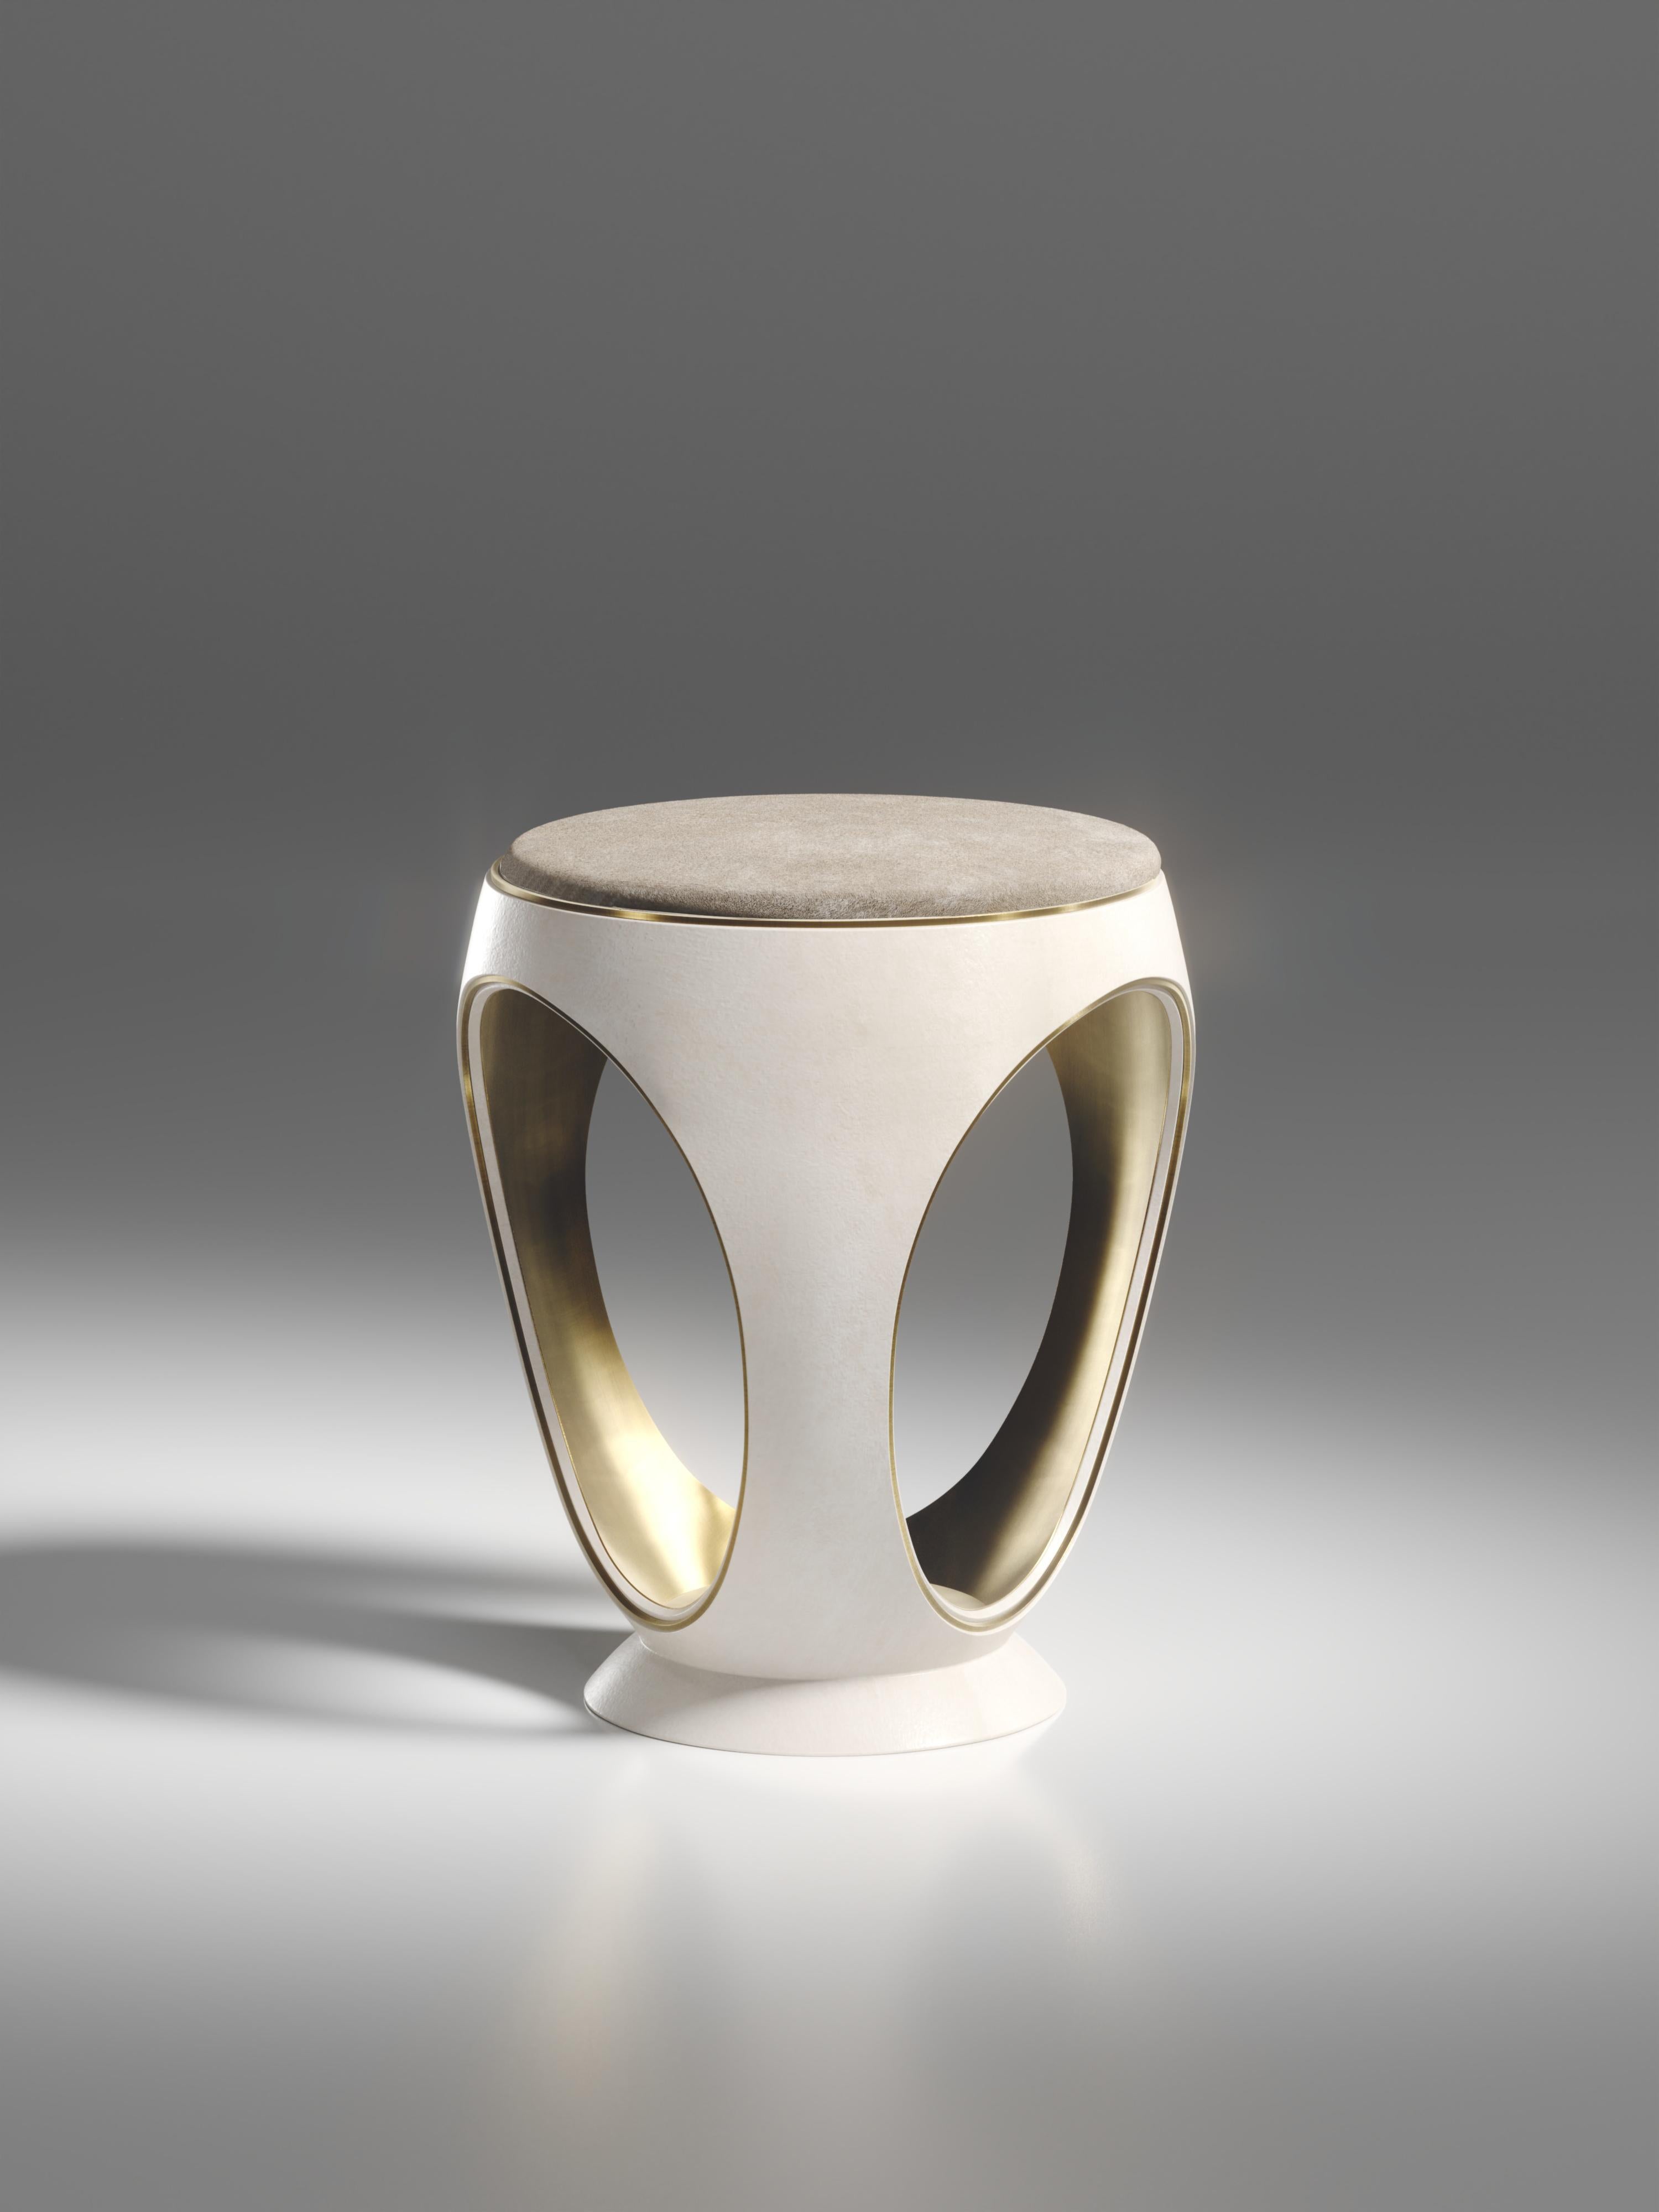 Le tabouret annulaire en parchemin crème est l'une des pièces les plus emblématiques de la Collection R&Y Augousti. De forme sculpturale, semblable à un bijou, cette pièce a été relookée avec un discret détail d'indentation en laiton patiné bronze à